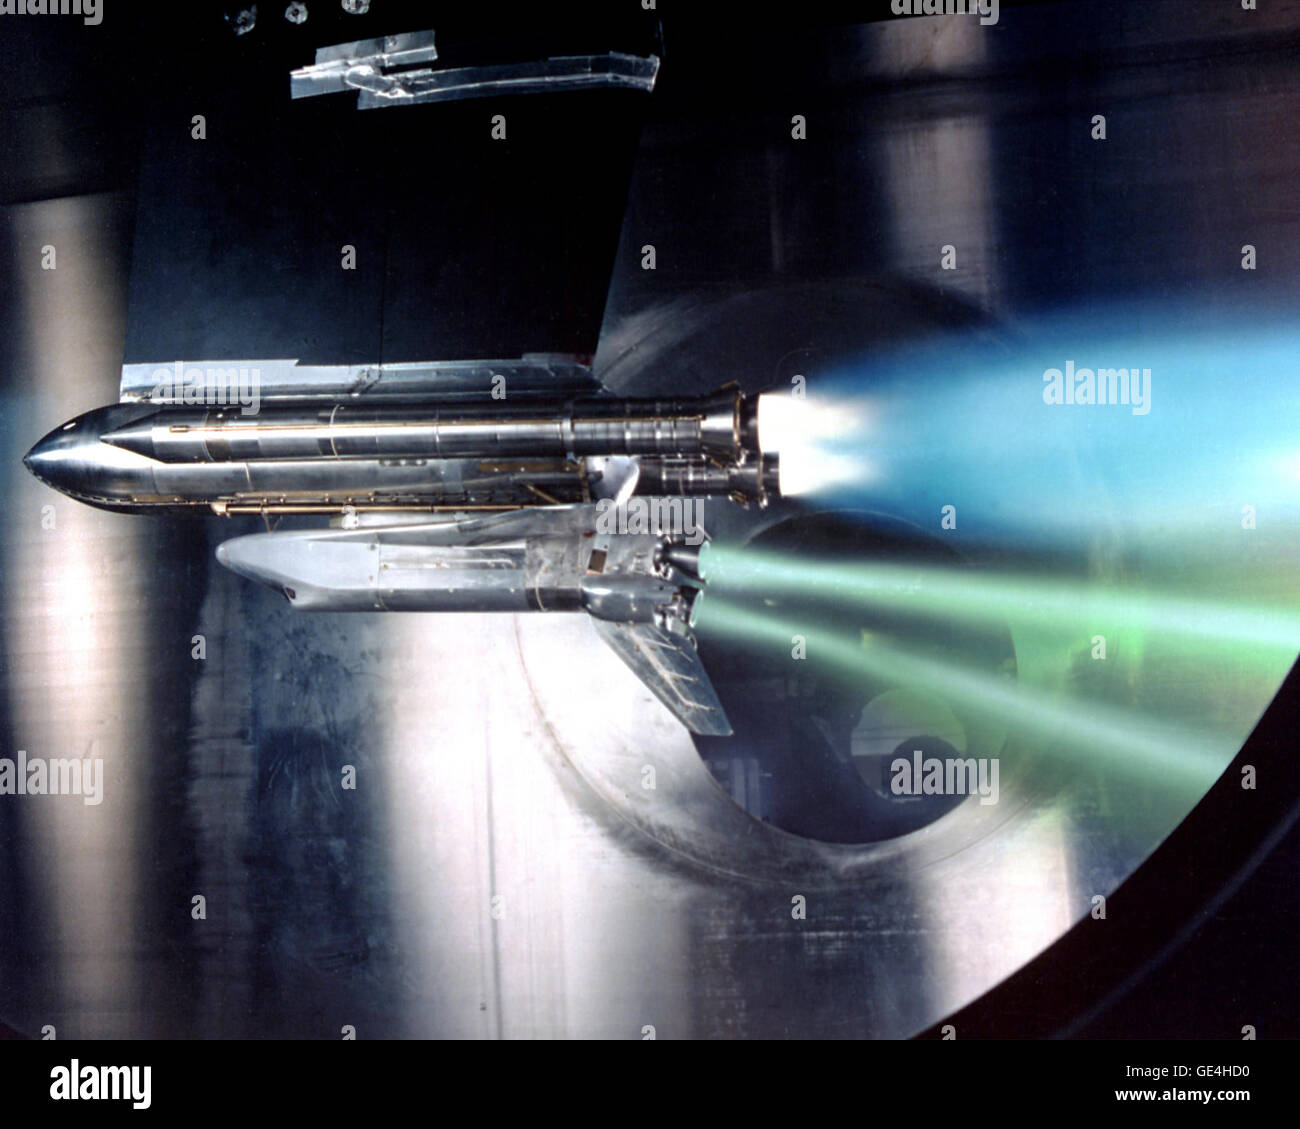 (18 maggio 1988) Questa è una prova di ciò che accade durante la fase di lancio se una navetta spaziale principale motore si guasta. Il test è stato condotto in corrispondenza di quello che ora è chiamato il John H. Glenn Research Center. Immagine #: Data: 18 Maggio 1988 Foto Stock